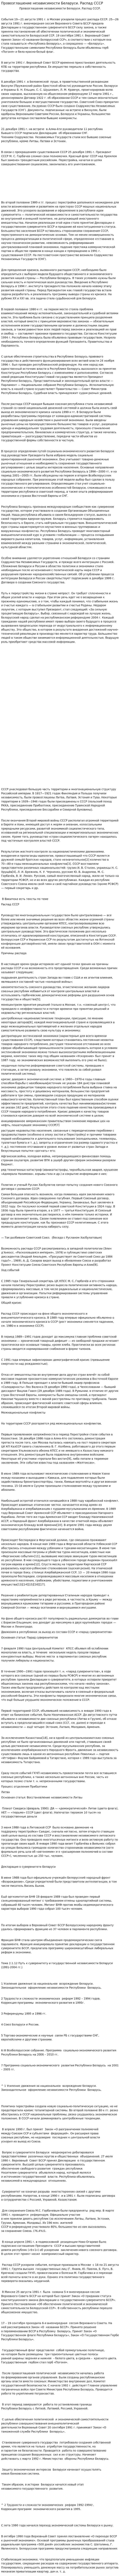 Провозглашение независимости Беларуси. Распад СССР